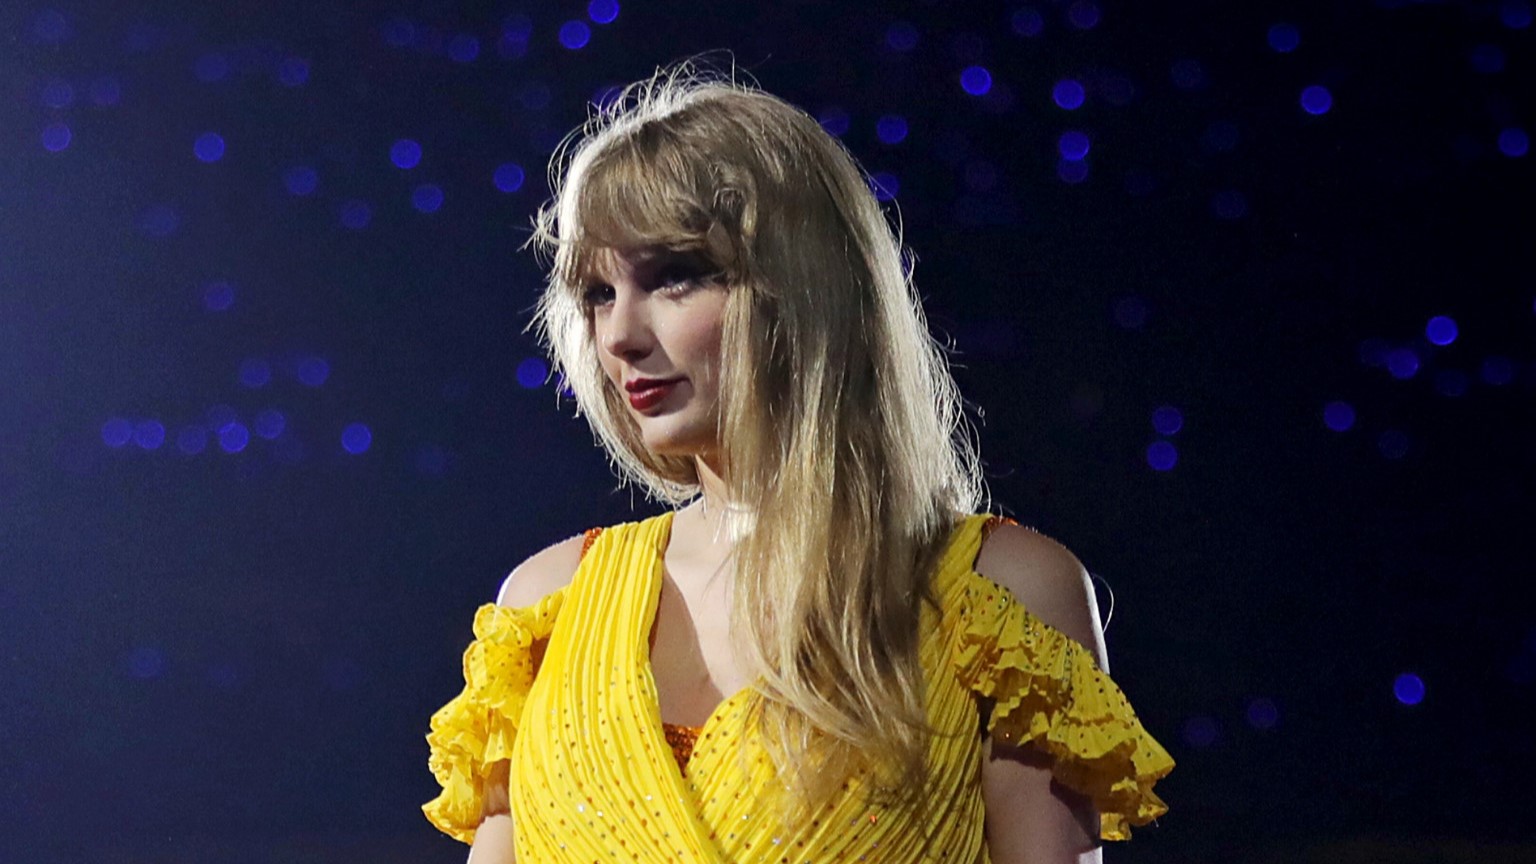 Taylor Swift wearing a yellow dress